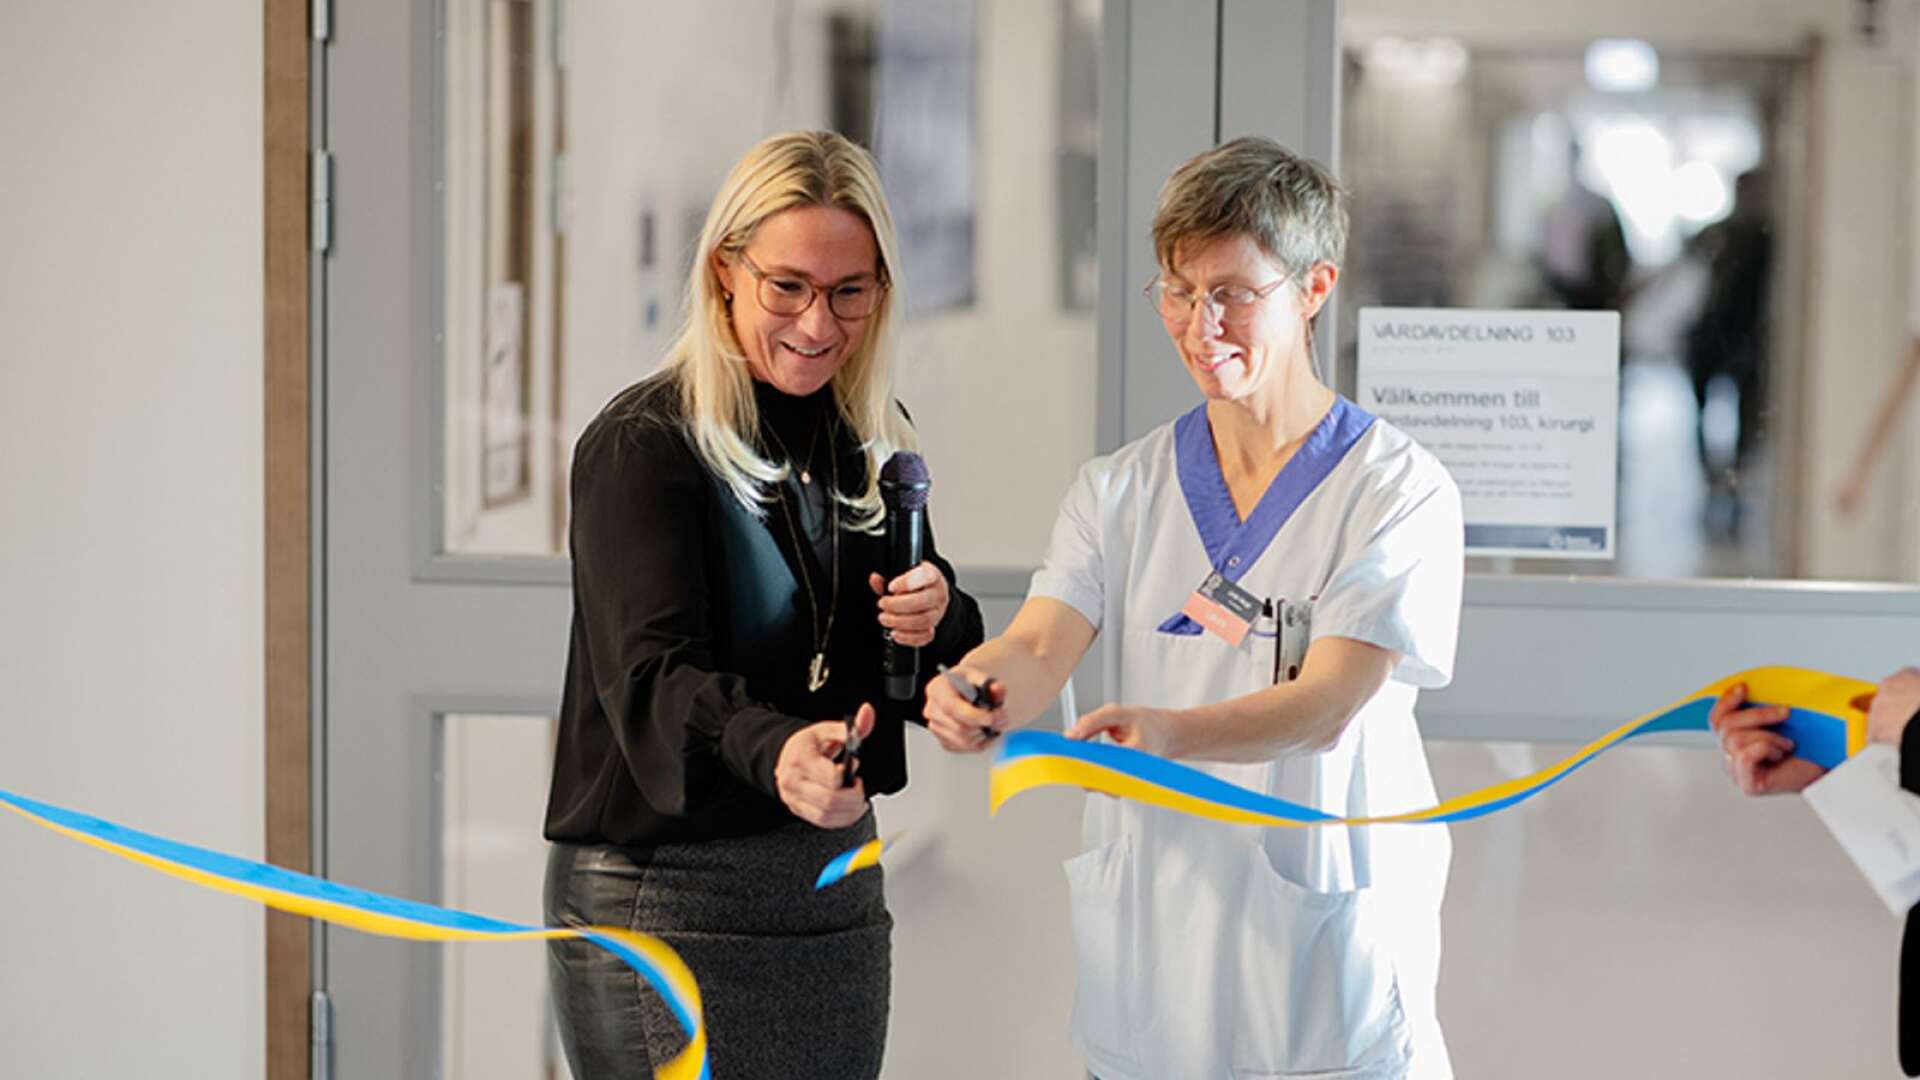 Åsa Johansson, regionstyrelsens ordförande, och Linda Hauge, verksamhetschef, klipper bandet vid invigningen av kirurgens nya lokaler på Centralsjukhuset.